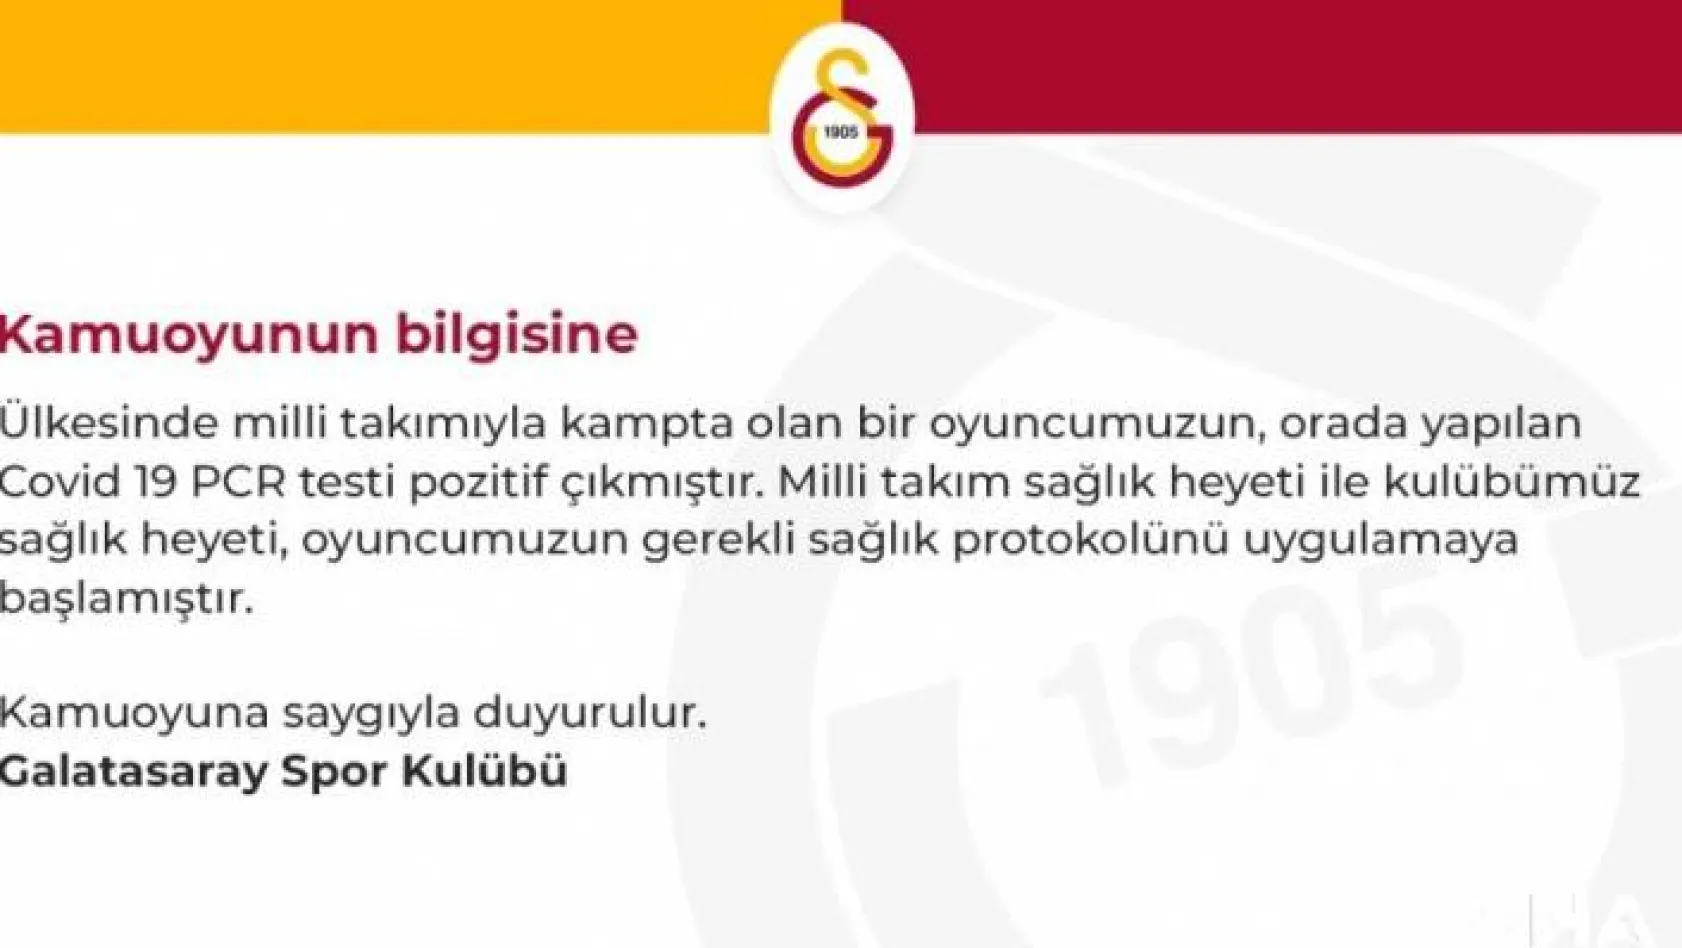 Galatasaray: "Ülkesinin milli takımında olan bir oyuncumuzun testi pozitif çıktı"